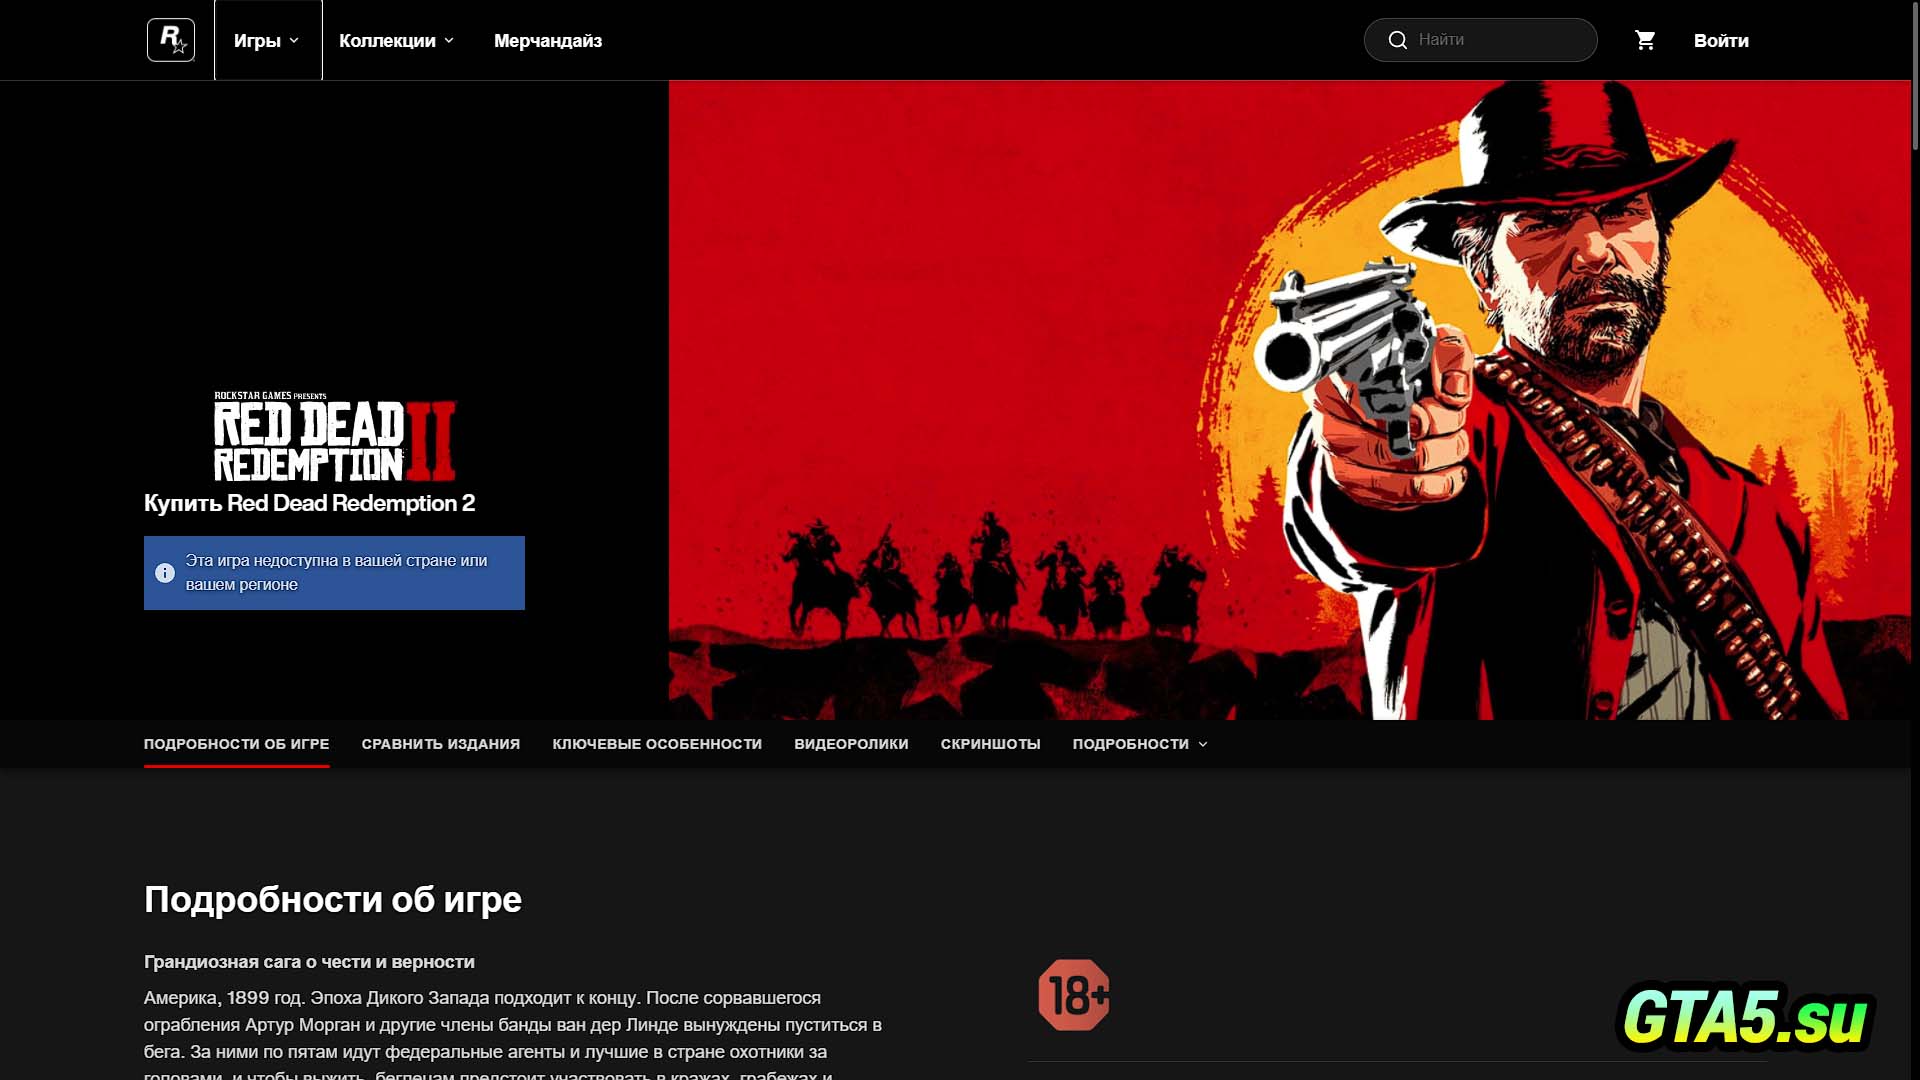 Из rockstar games не удалось загрузить файлы. Rockstar games заблокирован в России. Rockstar games логотип rdr 2 красная r.